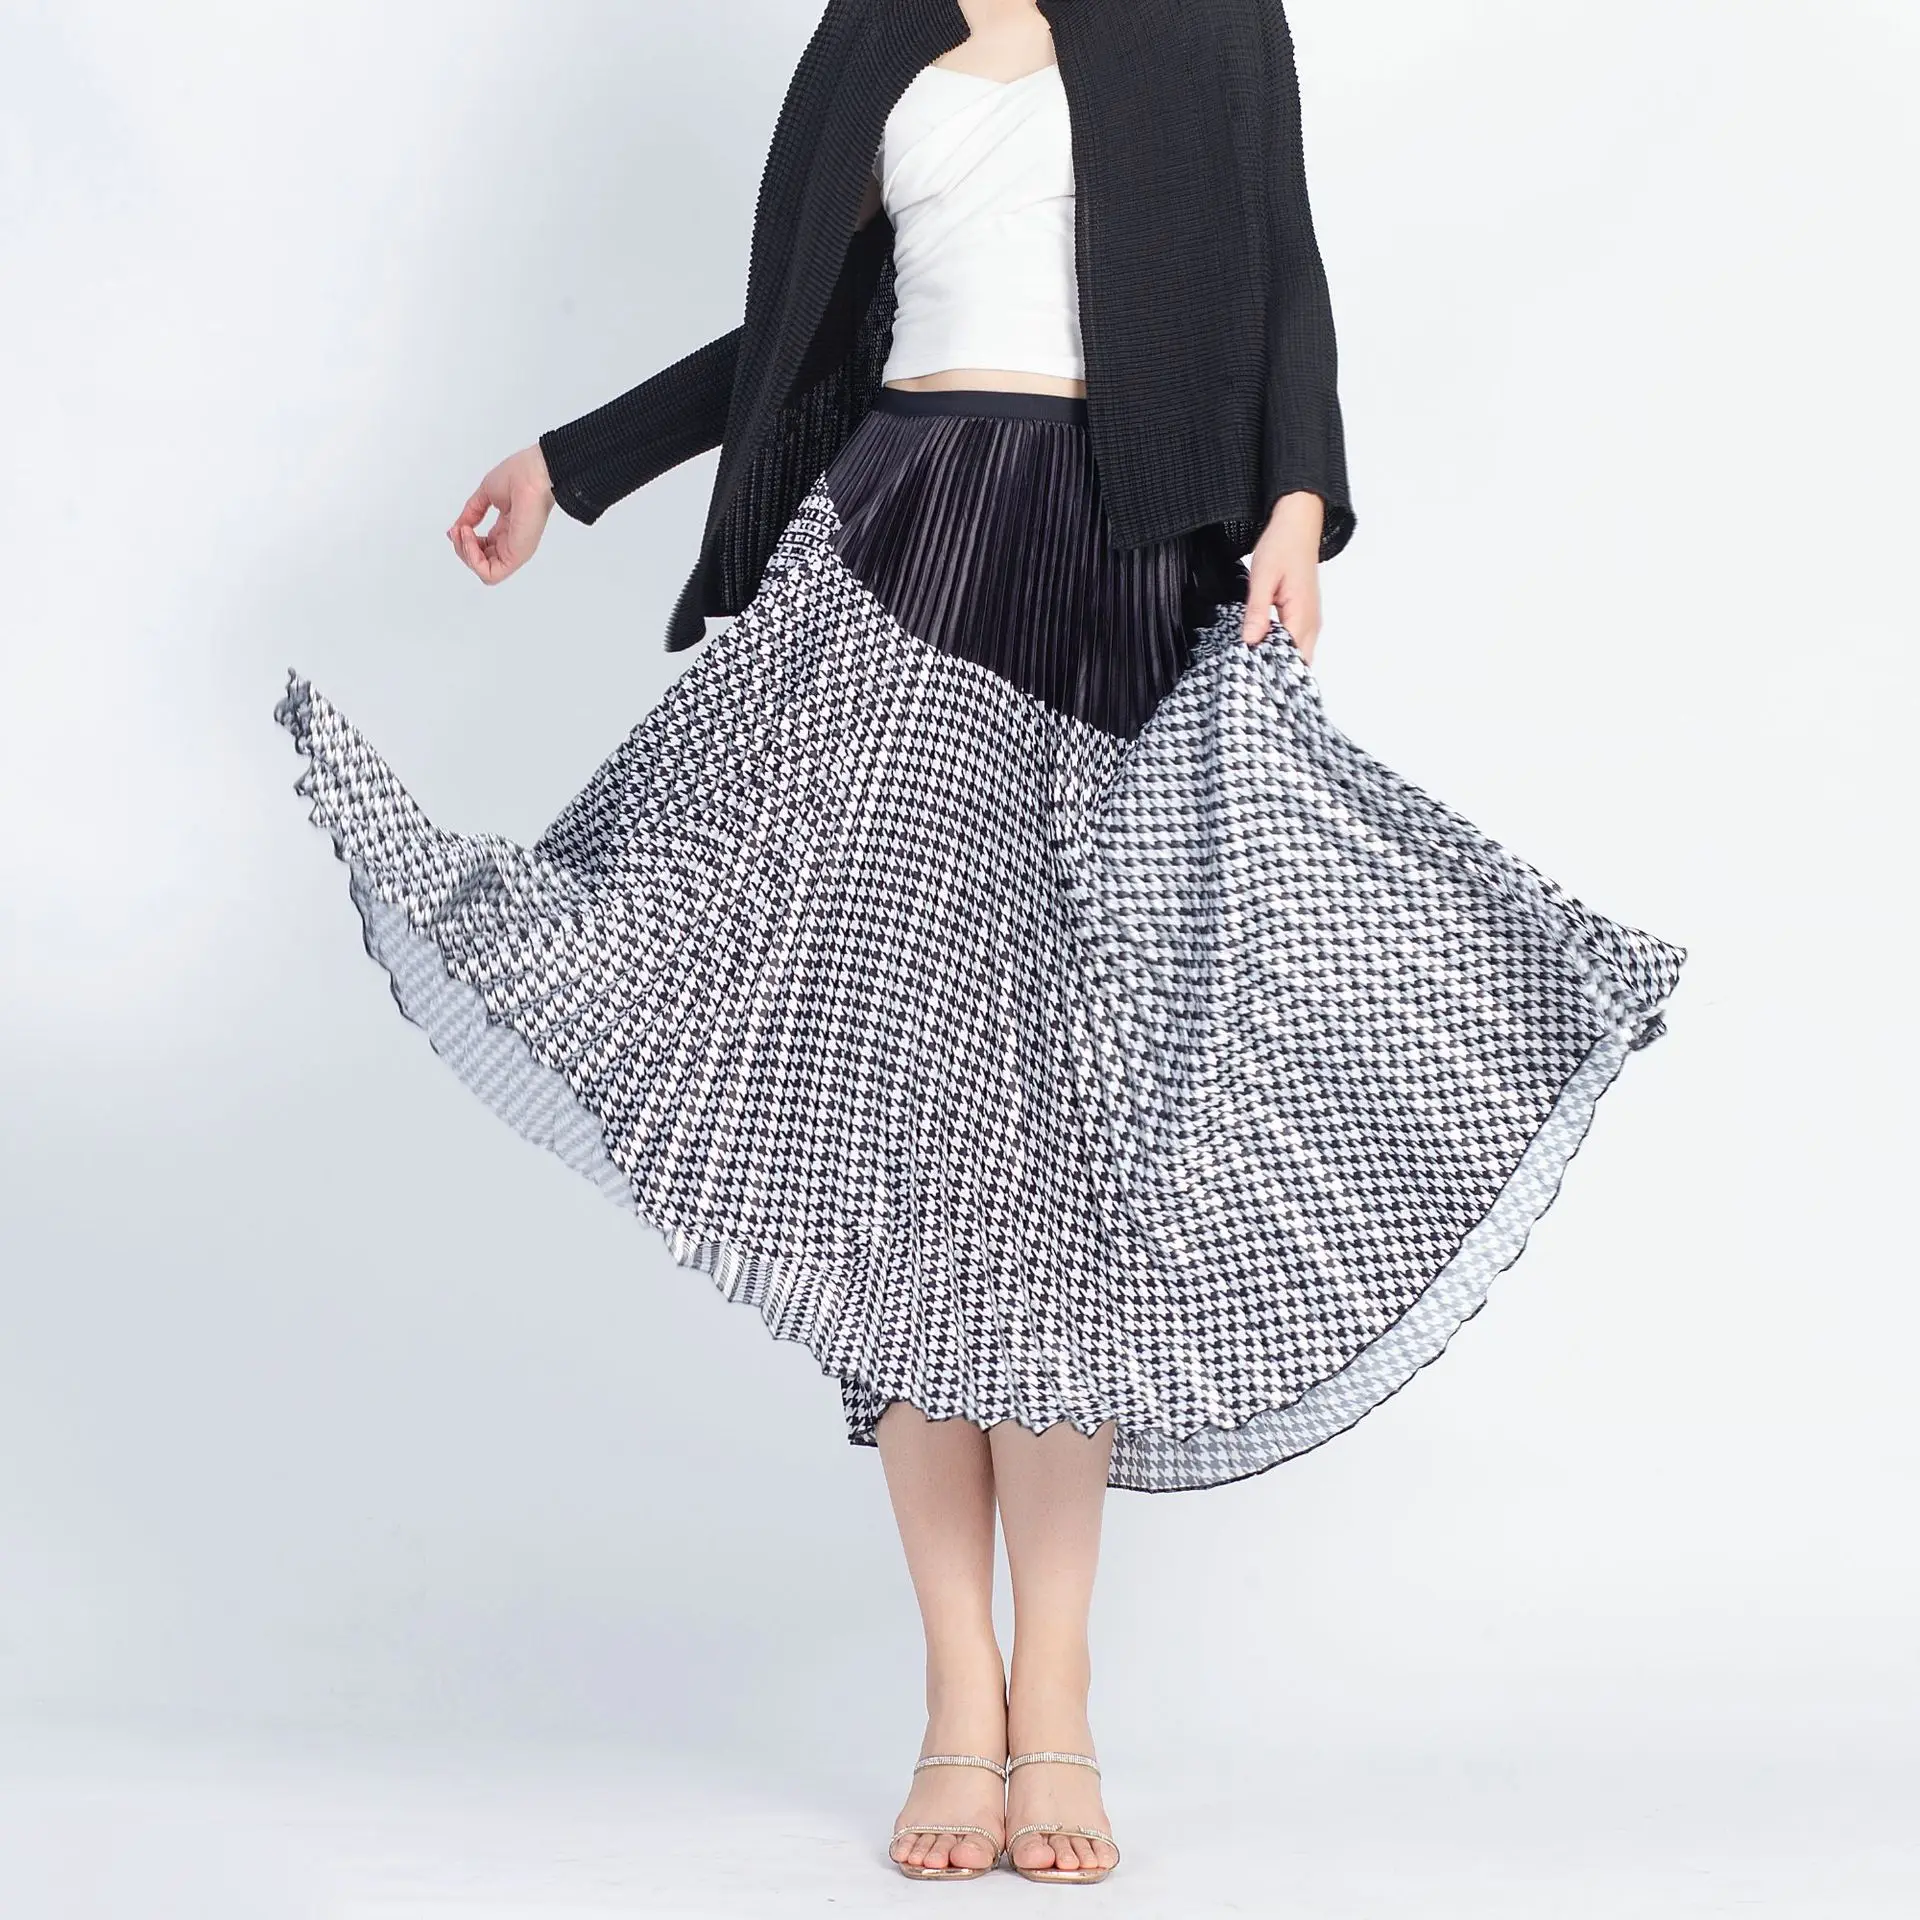 Japanese designer summer skirt women's skirt pleated knitted black houndstooth commuter style A-line skirt